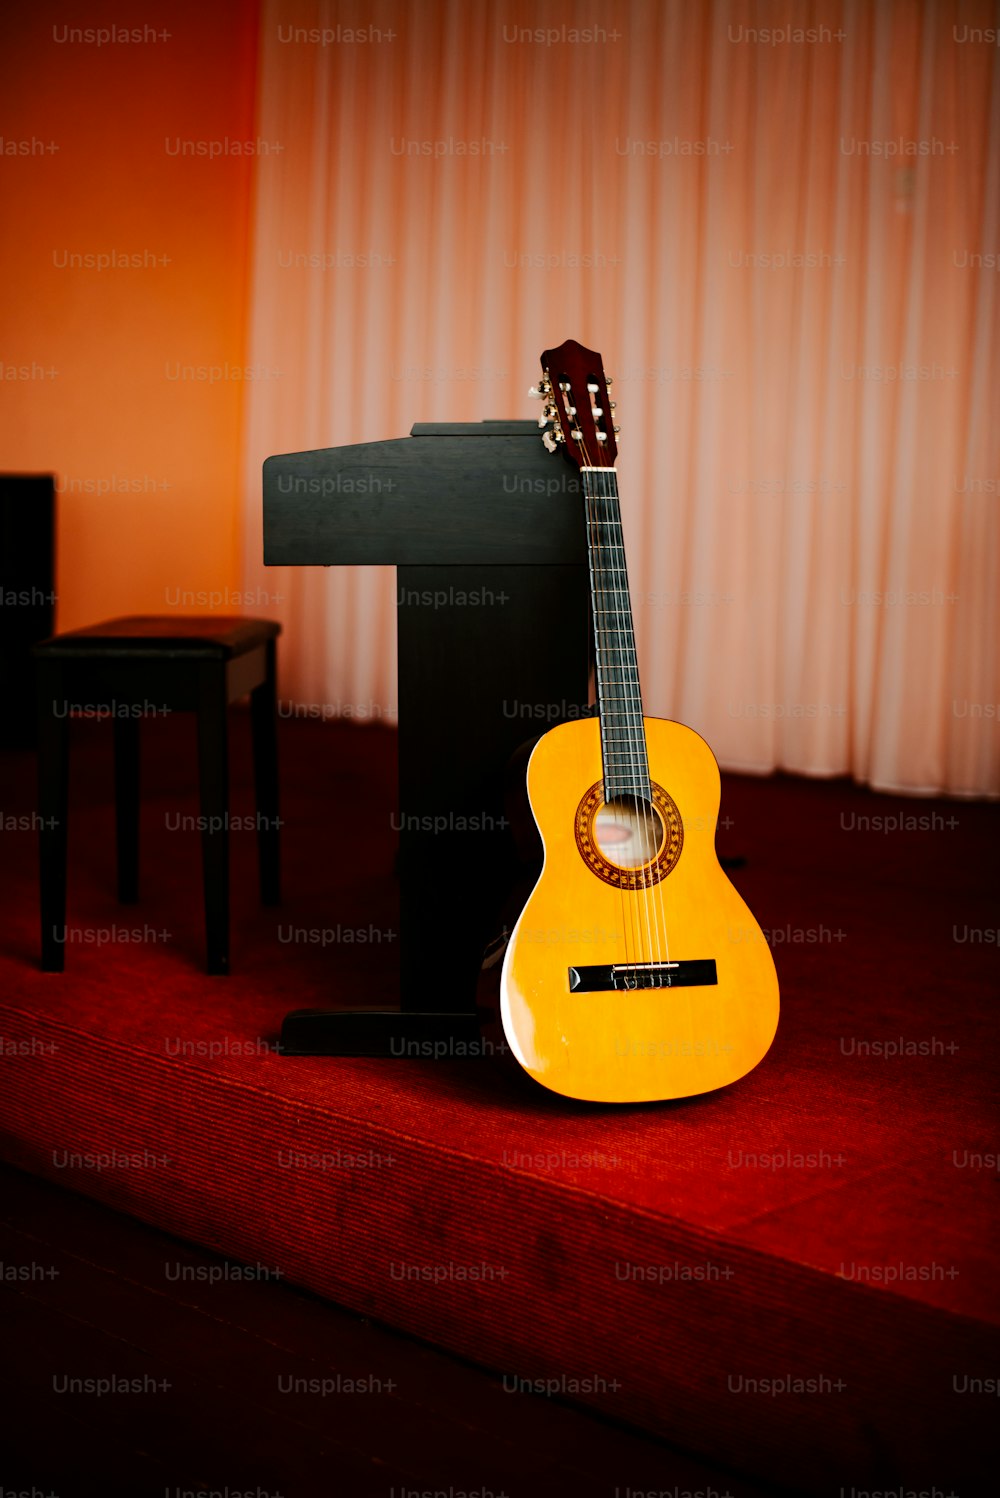 레드 카펫 위에 앉아 있는 노란색 기타